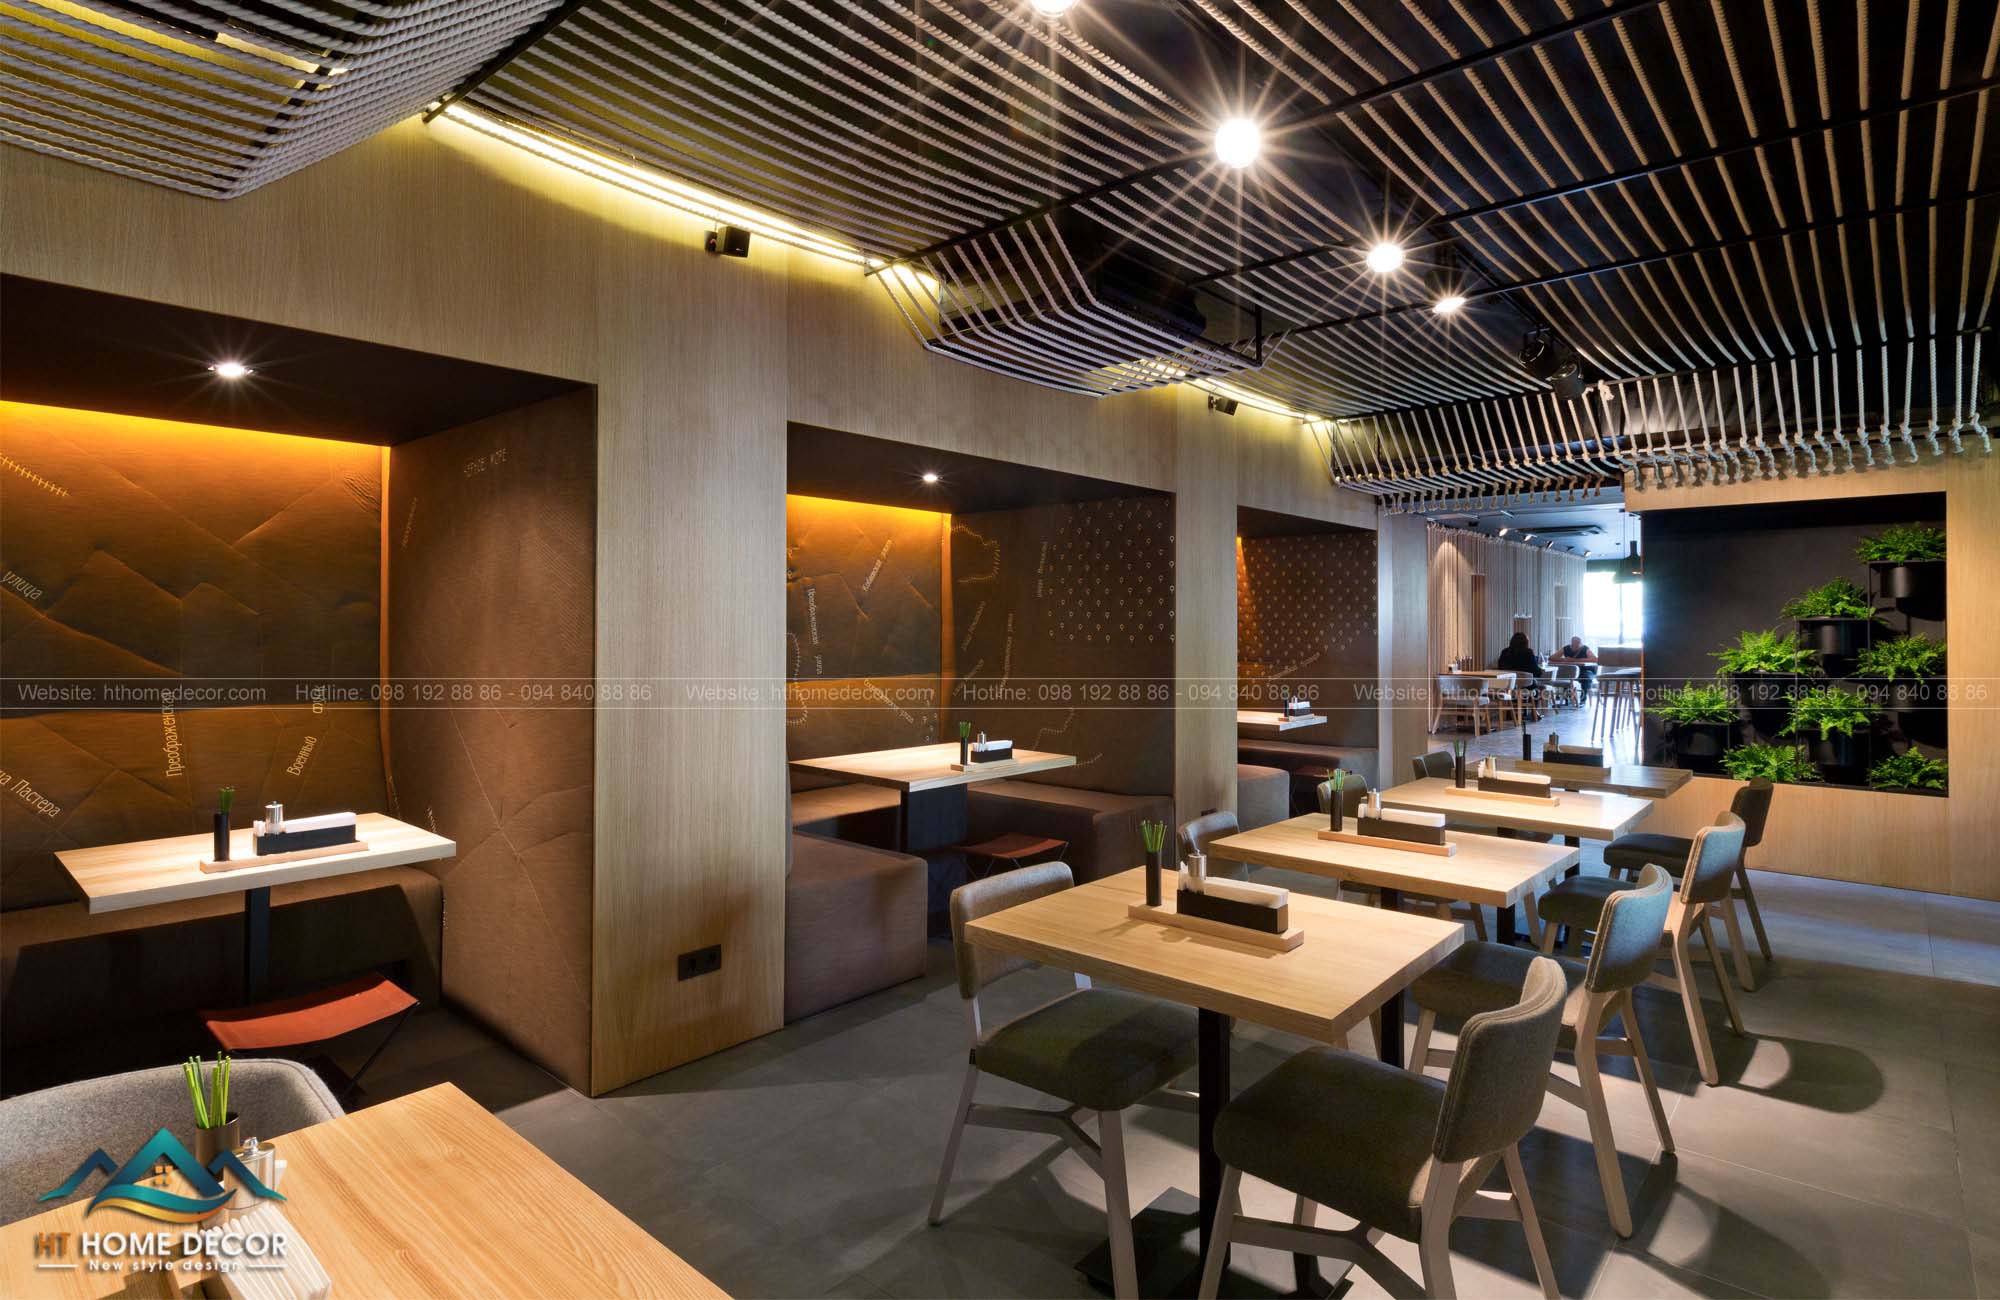 Thiết kế bàn ăn trong một gian riêng biệt, tạo không gian riêng tư cho những cặp tình nhân.